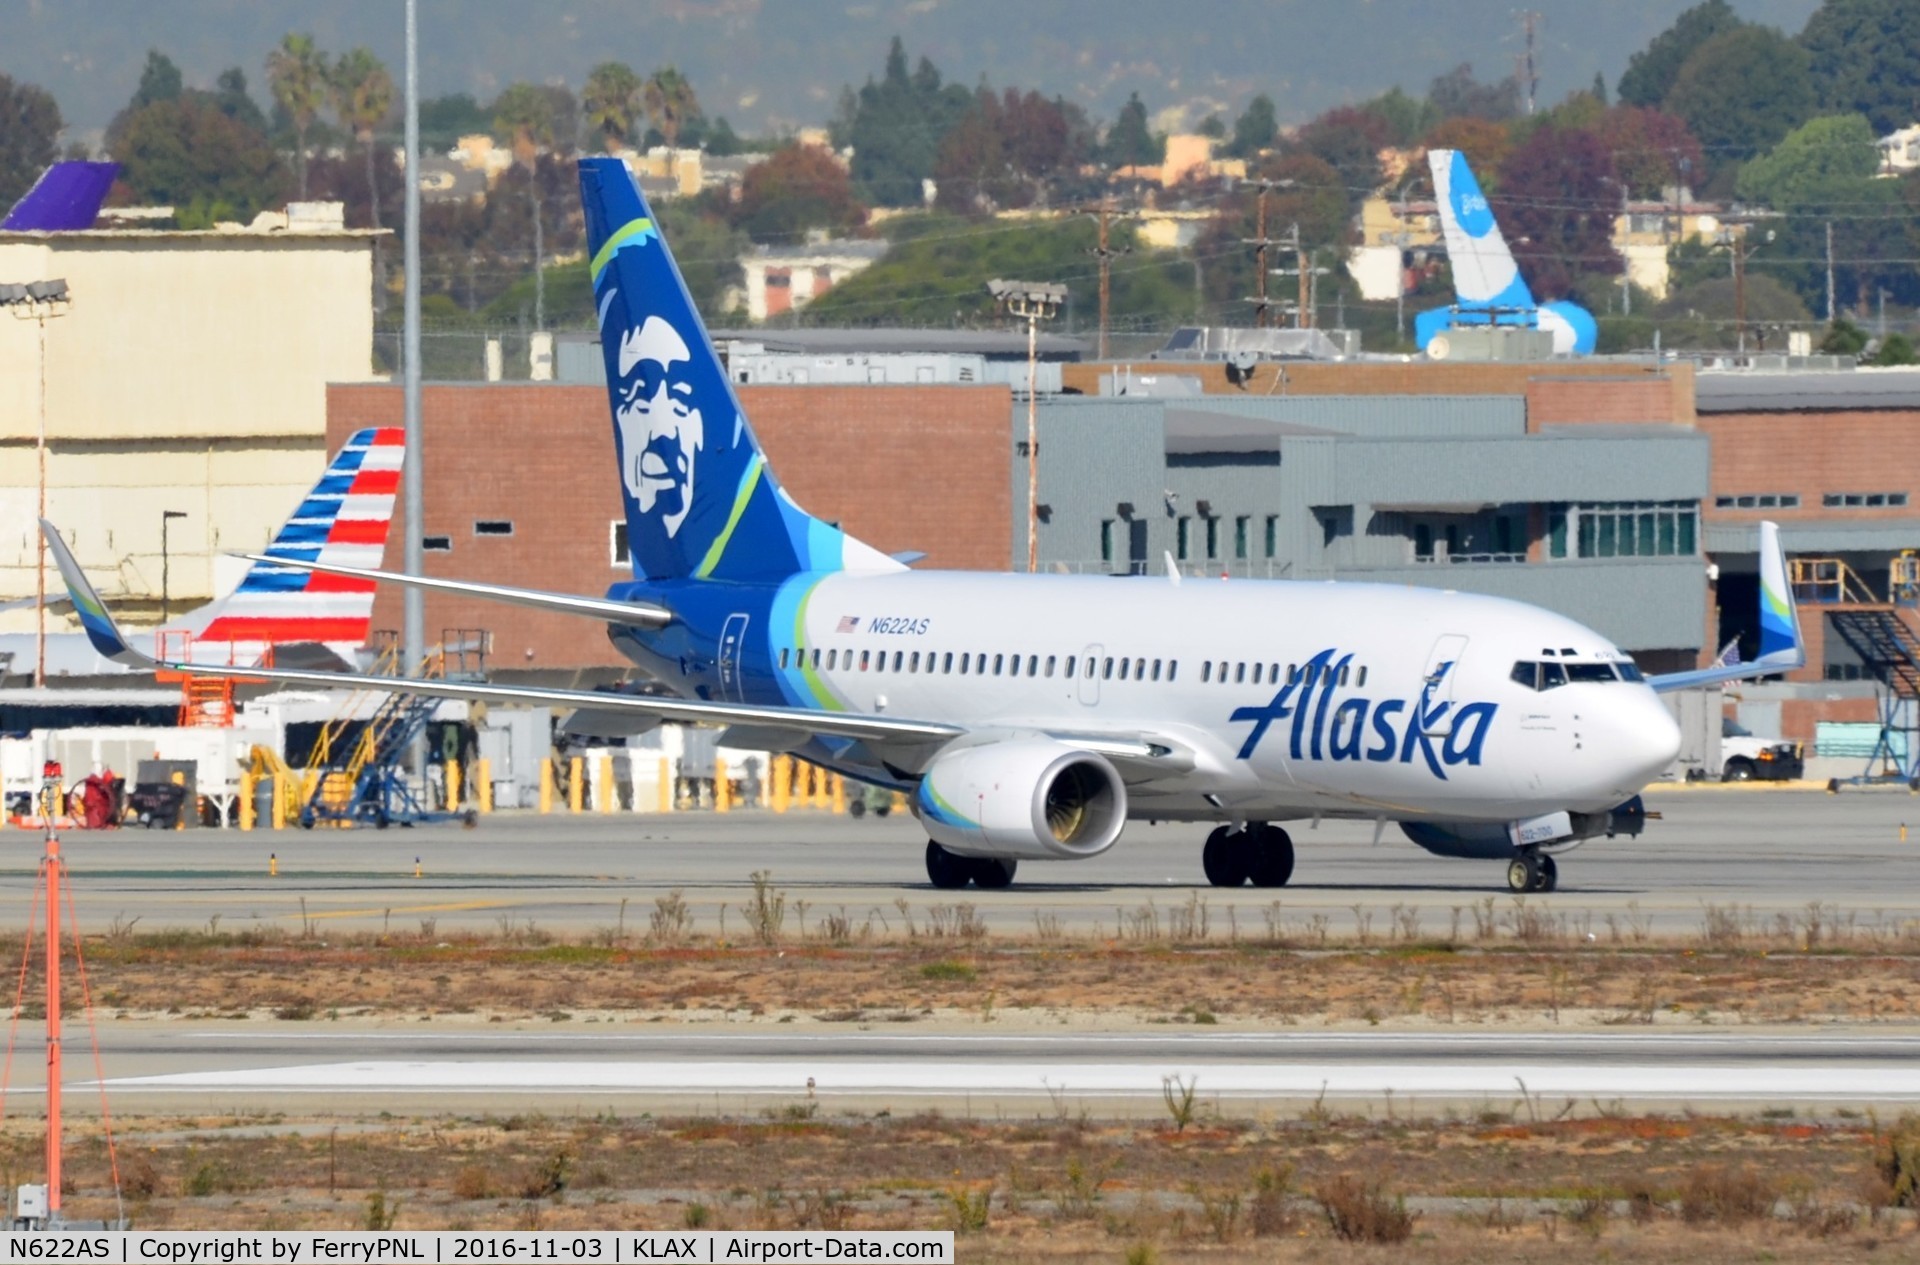 N622AS, 2000 Boeing 737-790 C/N 30165, Alaska B737 arrived in LAX